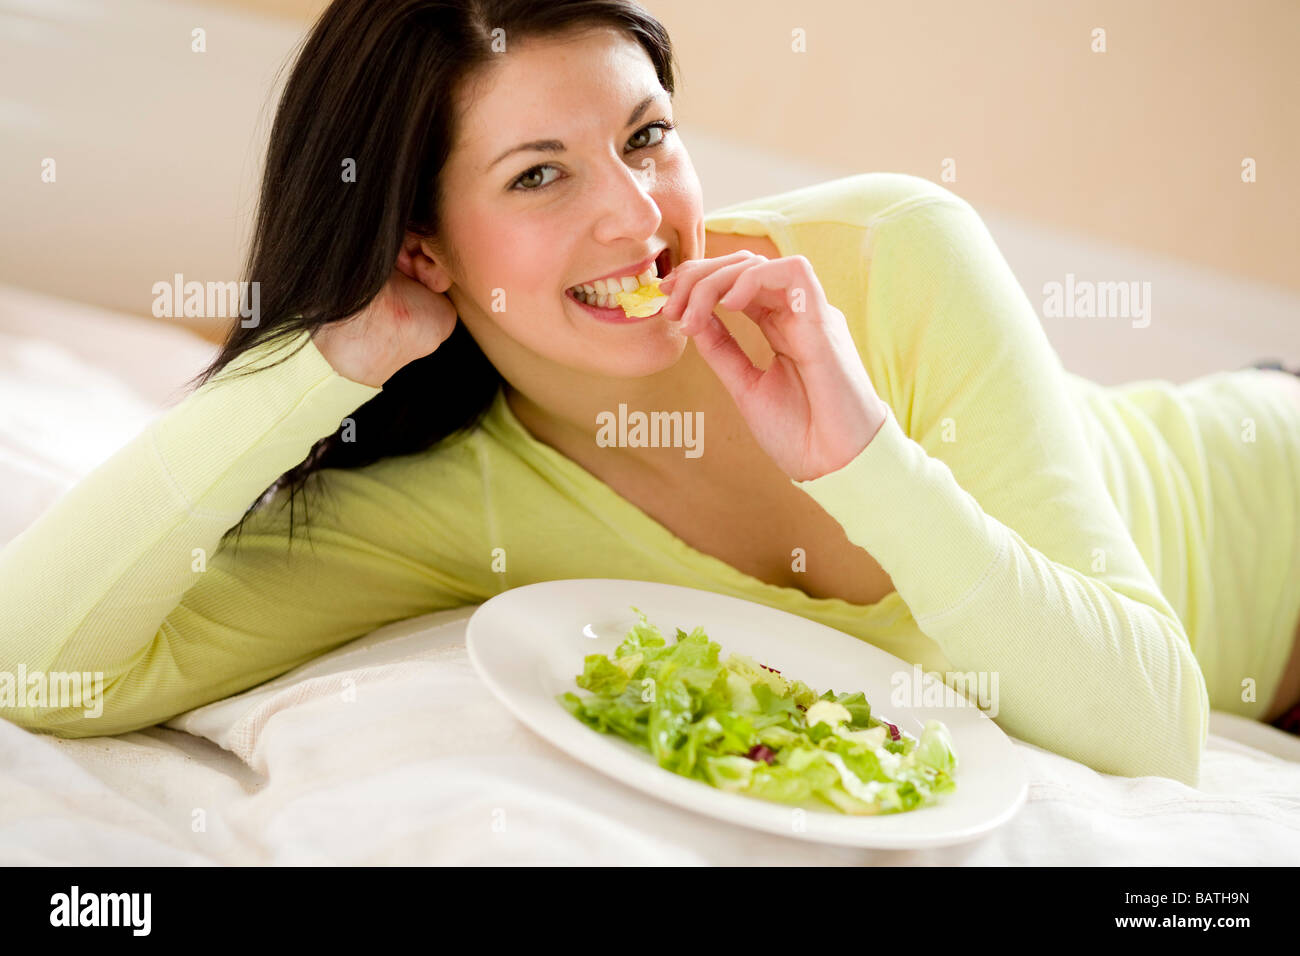 Girl eating salad Stock Photo